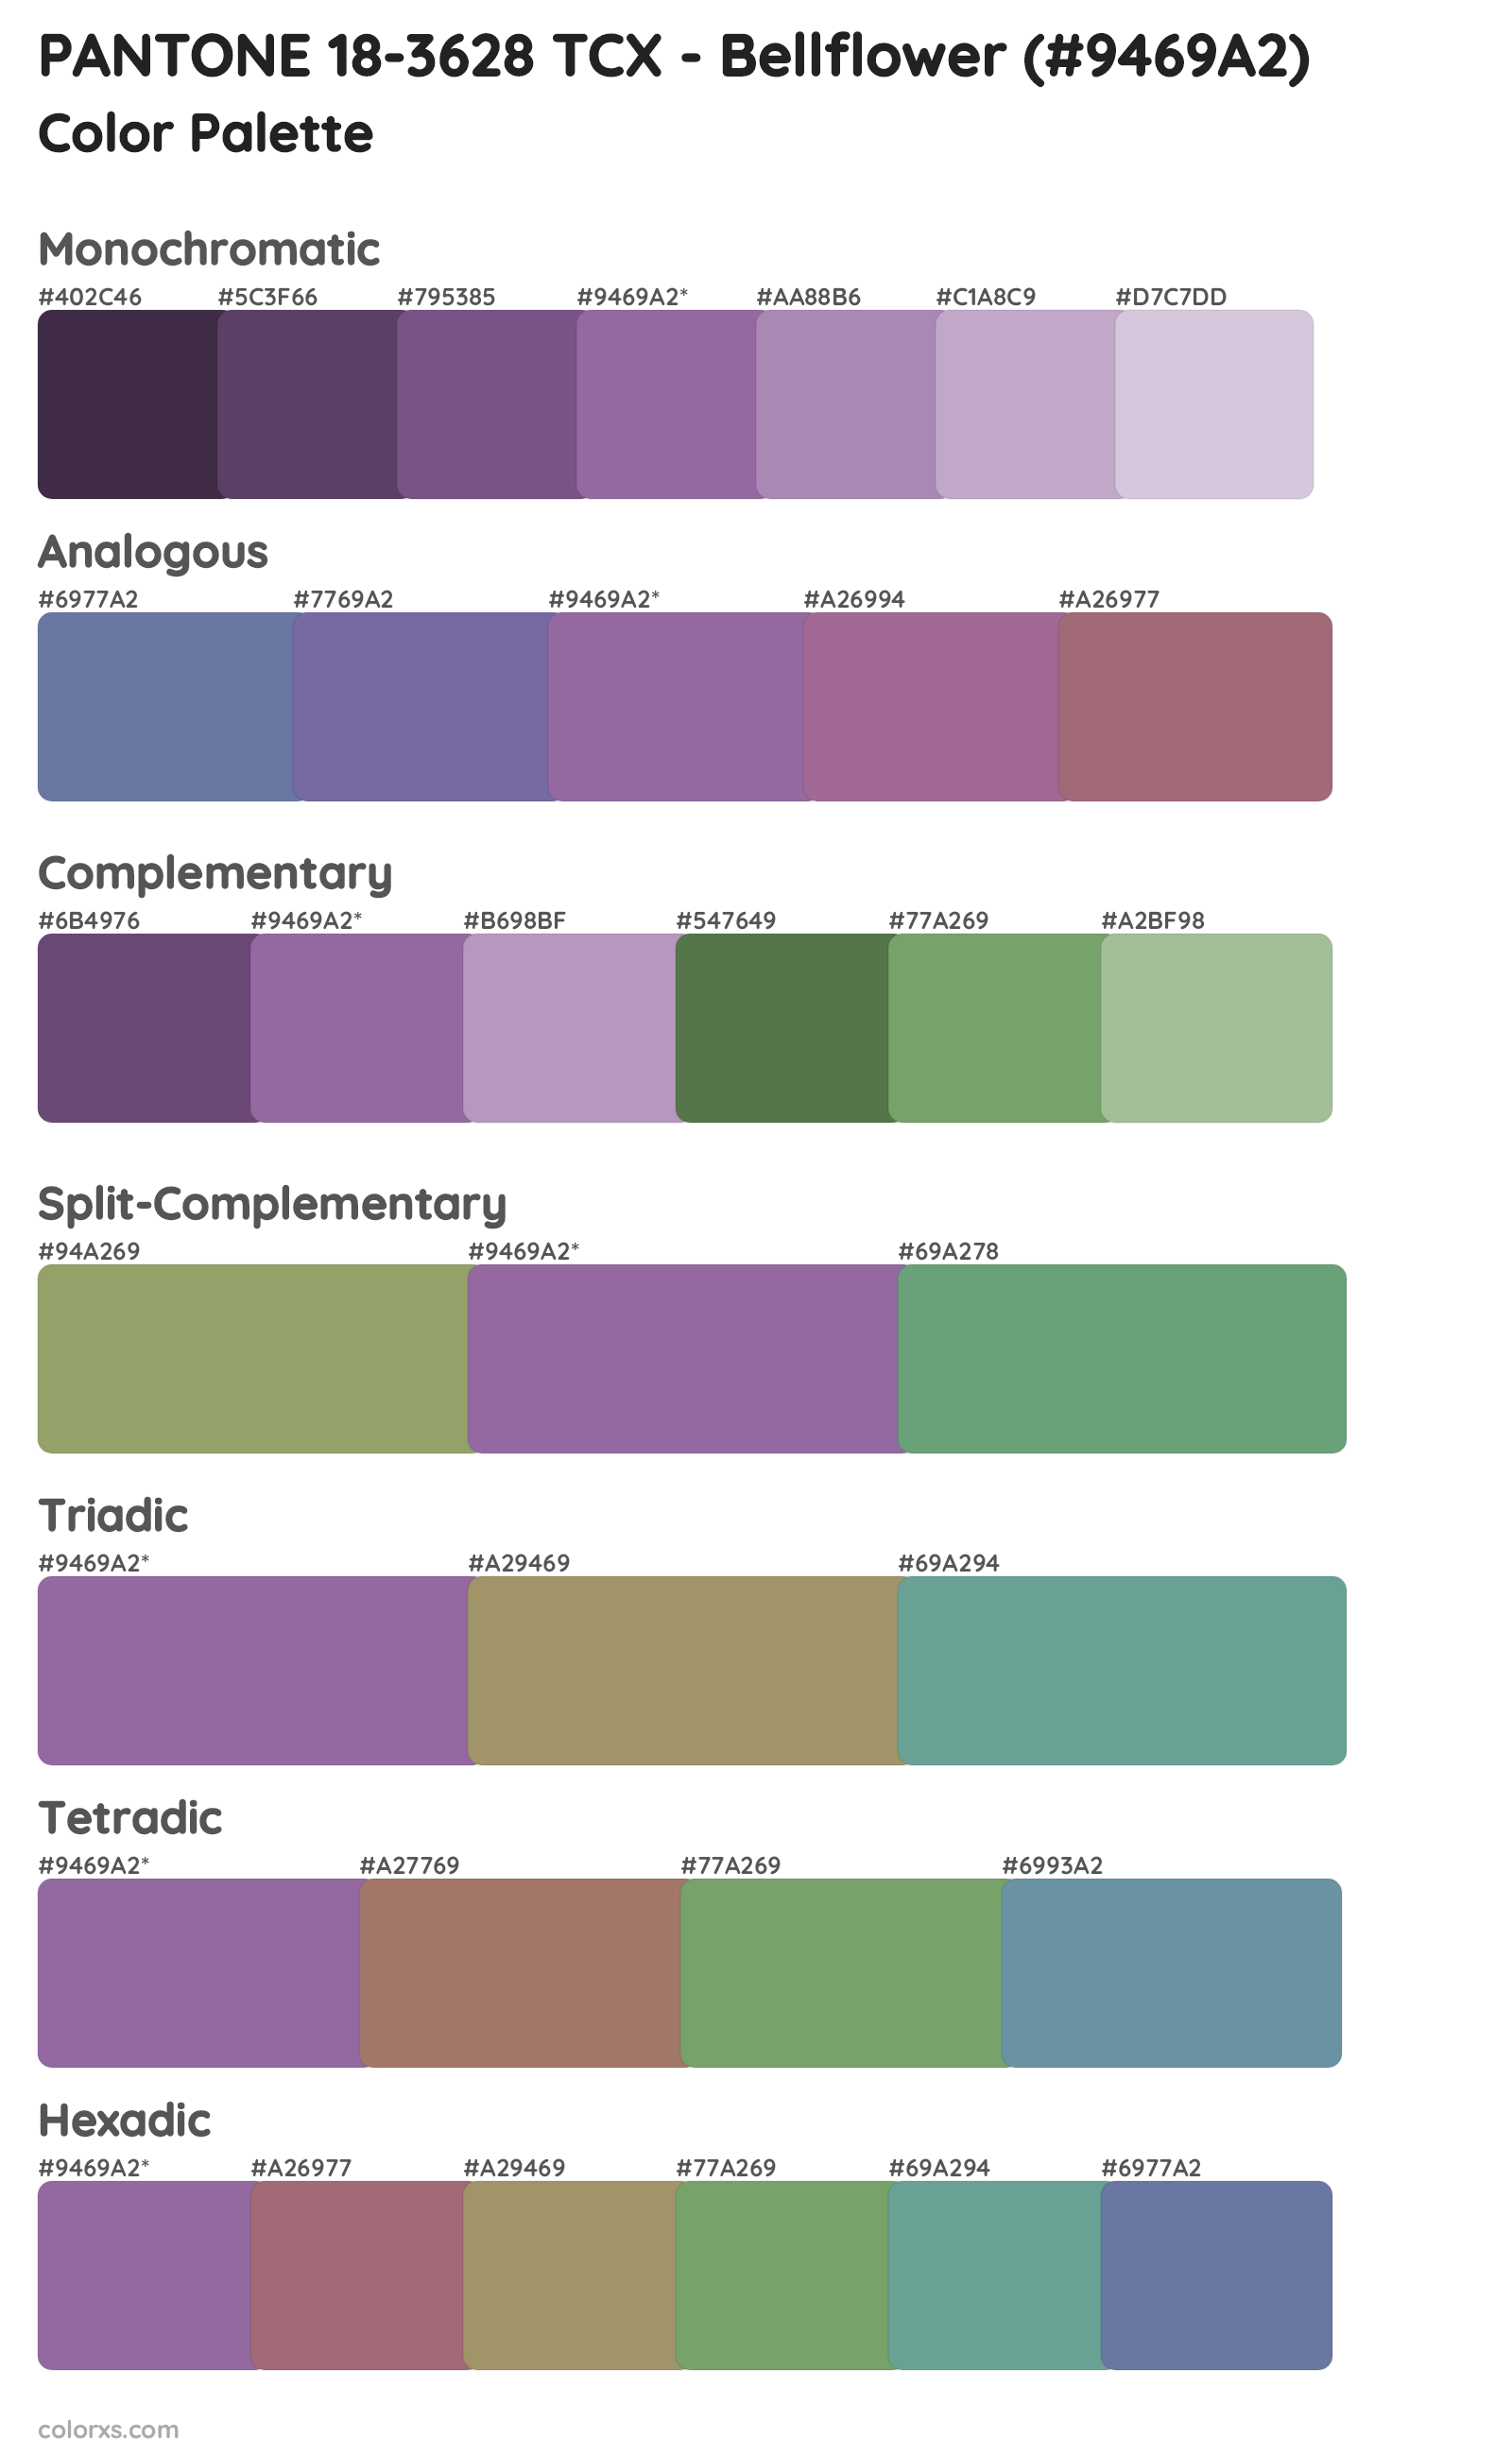 PANTONE 18-3628 TCX - Bellflower Color Scheme Palettes